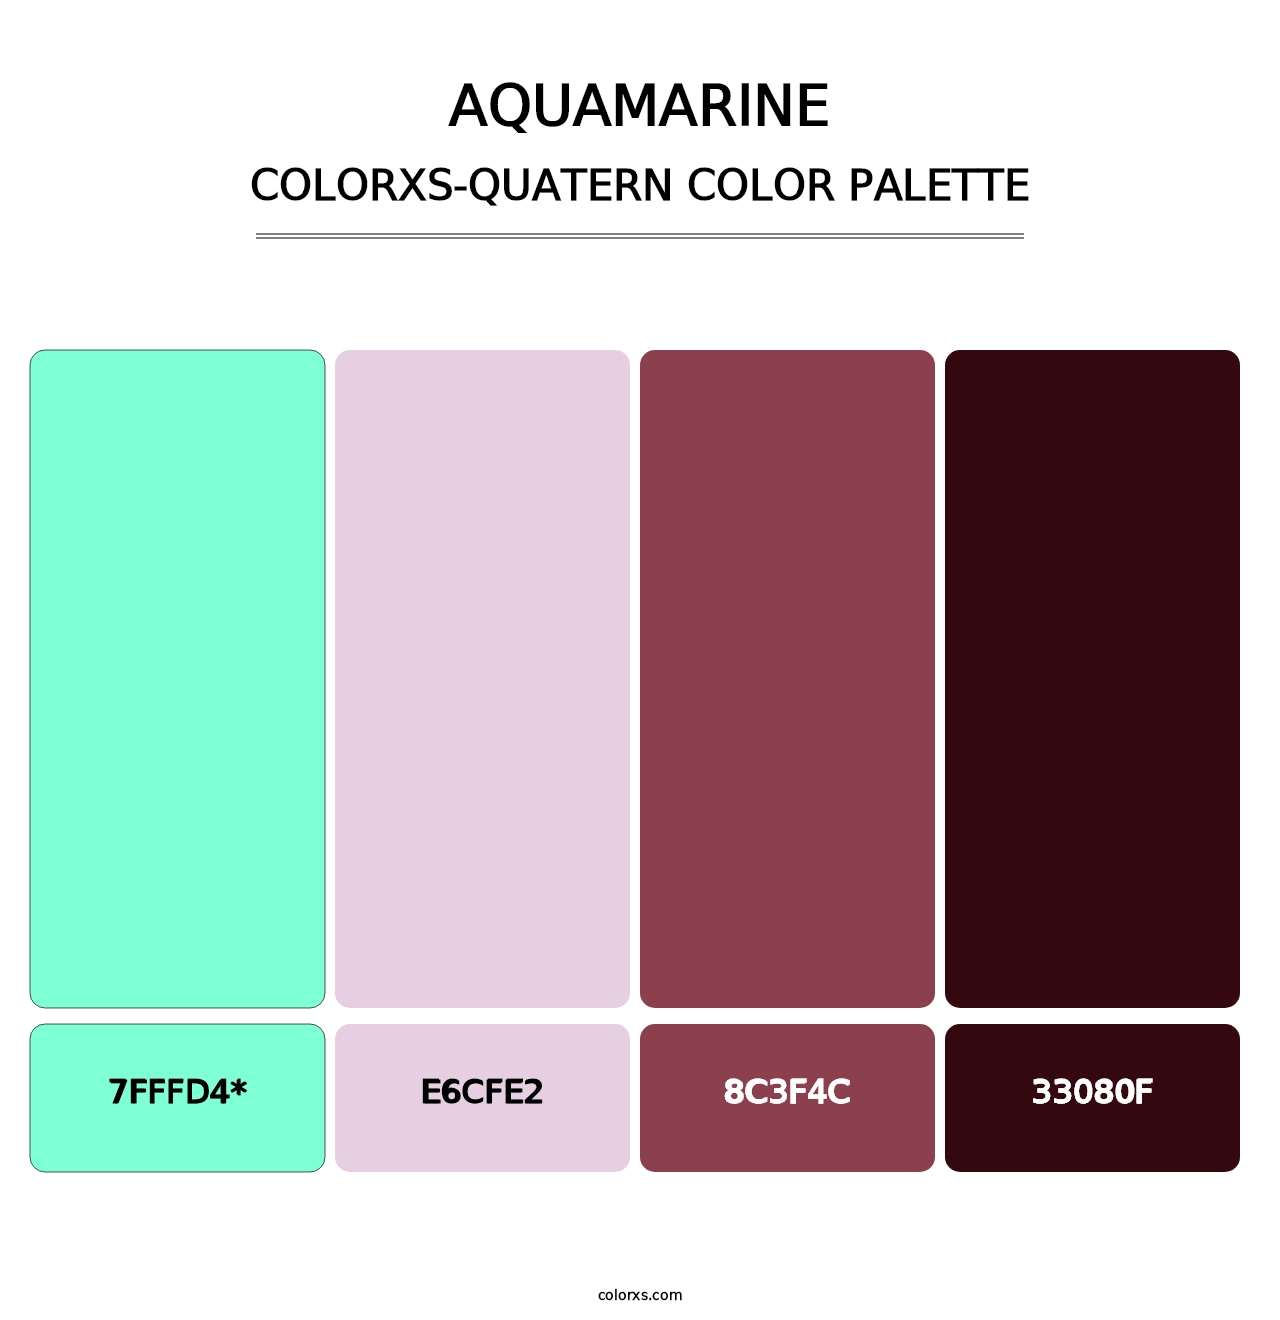 Aquamarine - Colorxs Quad Palette